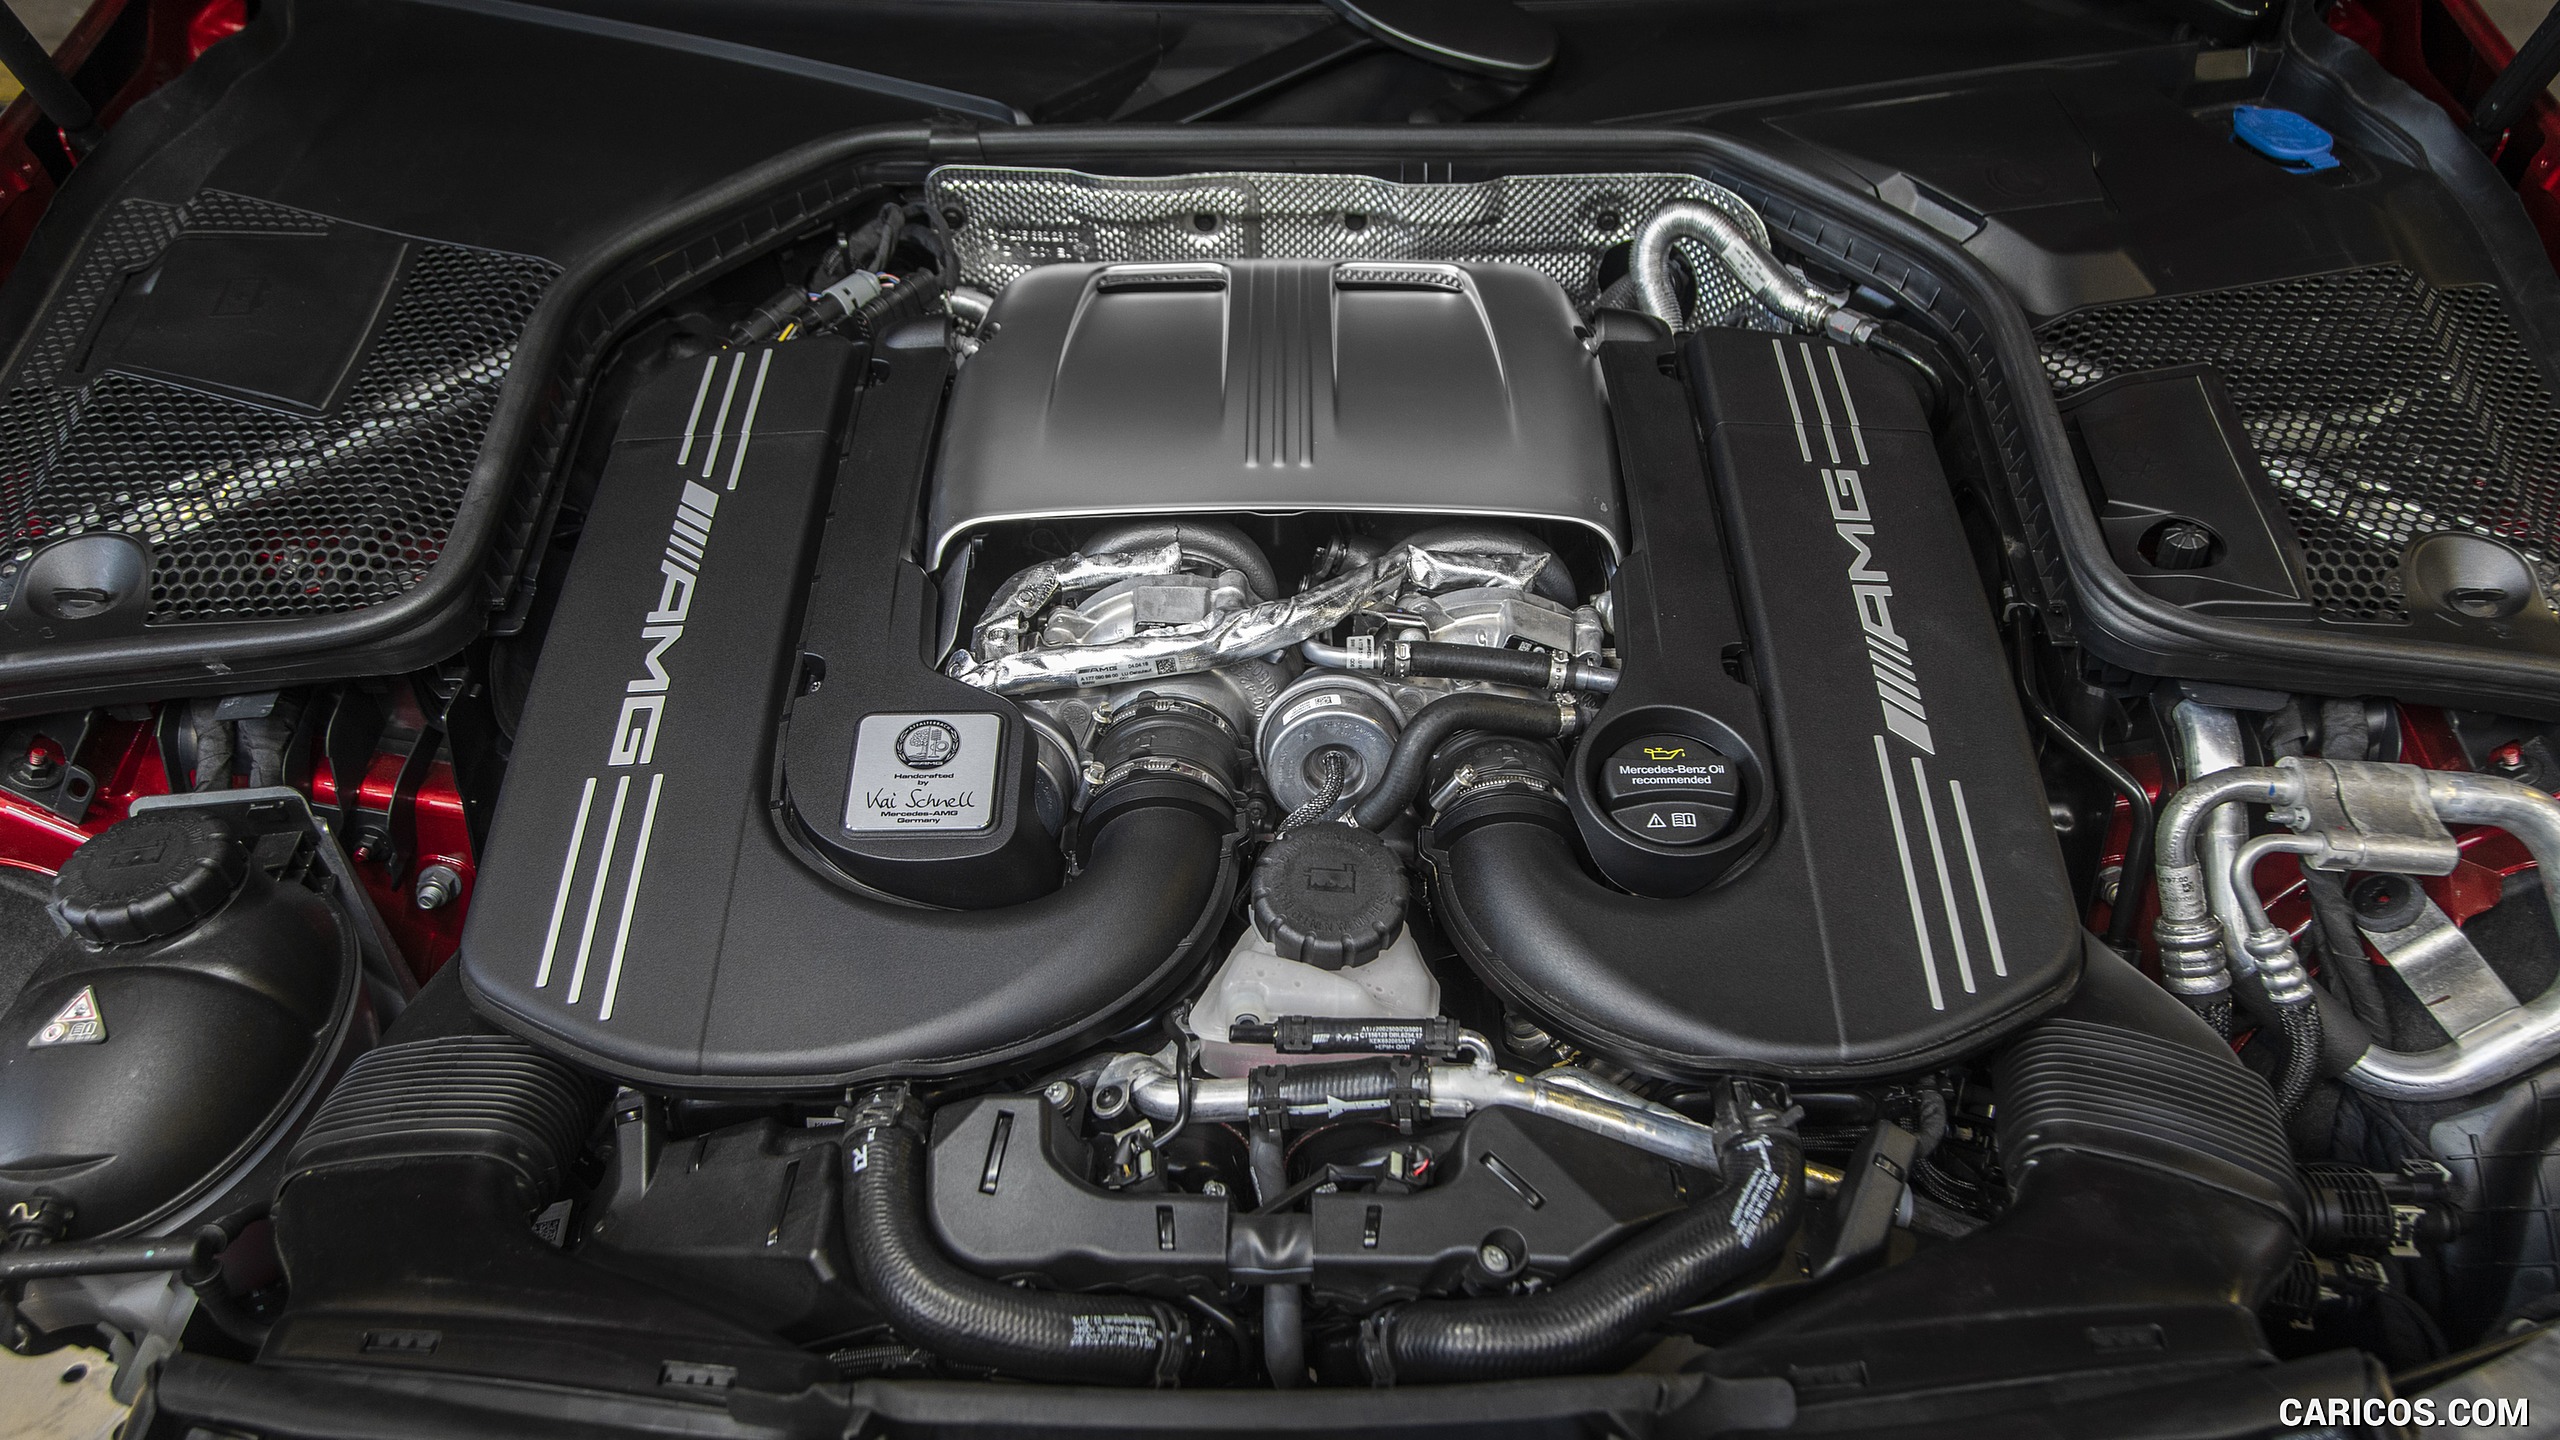 2019 Mercedes-AMG C63 S Sedan (US-Sedan) - Engine, #103 of 115